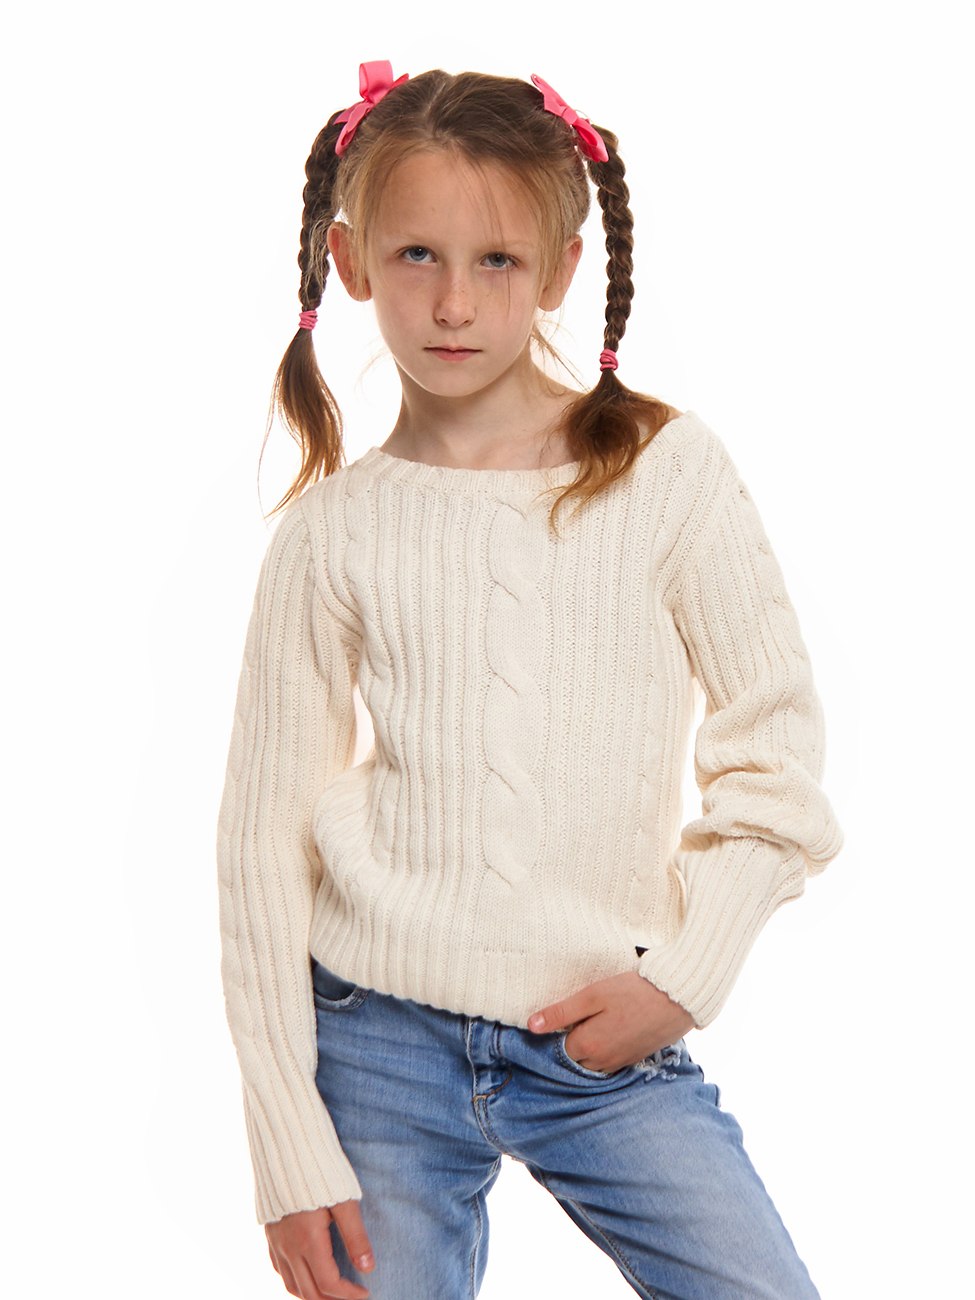 Кофты для девочек 9 лет. Свитер для девочки. Джемпер для девочки. Модный свитер для девочки. Свитер для девочки 10 лет.